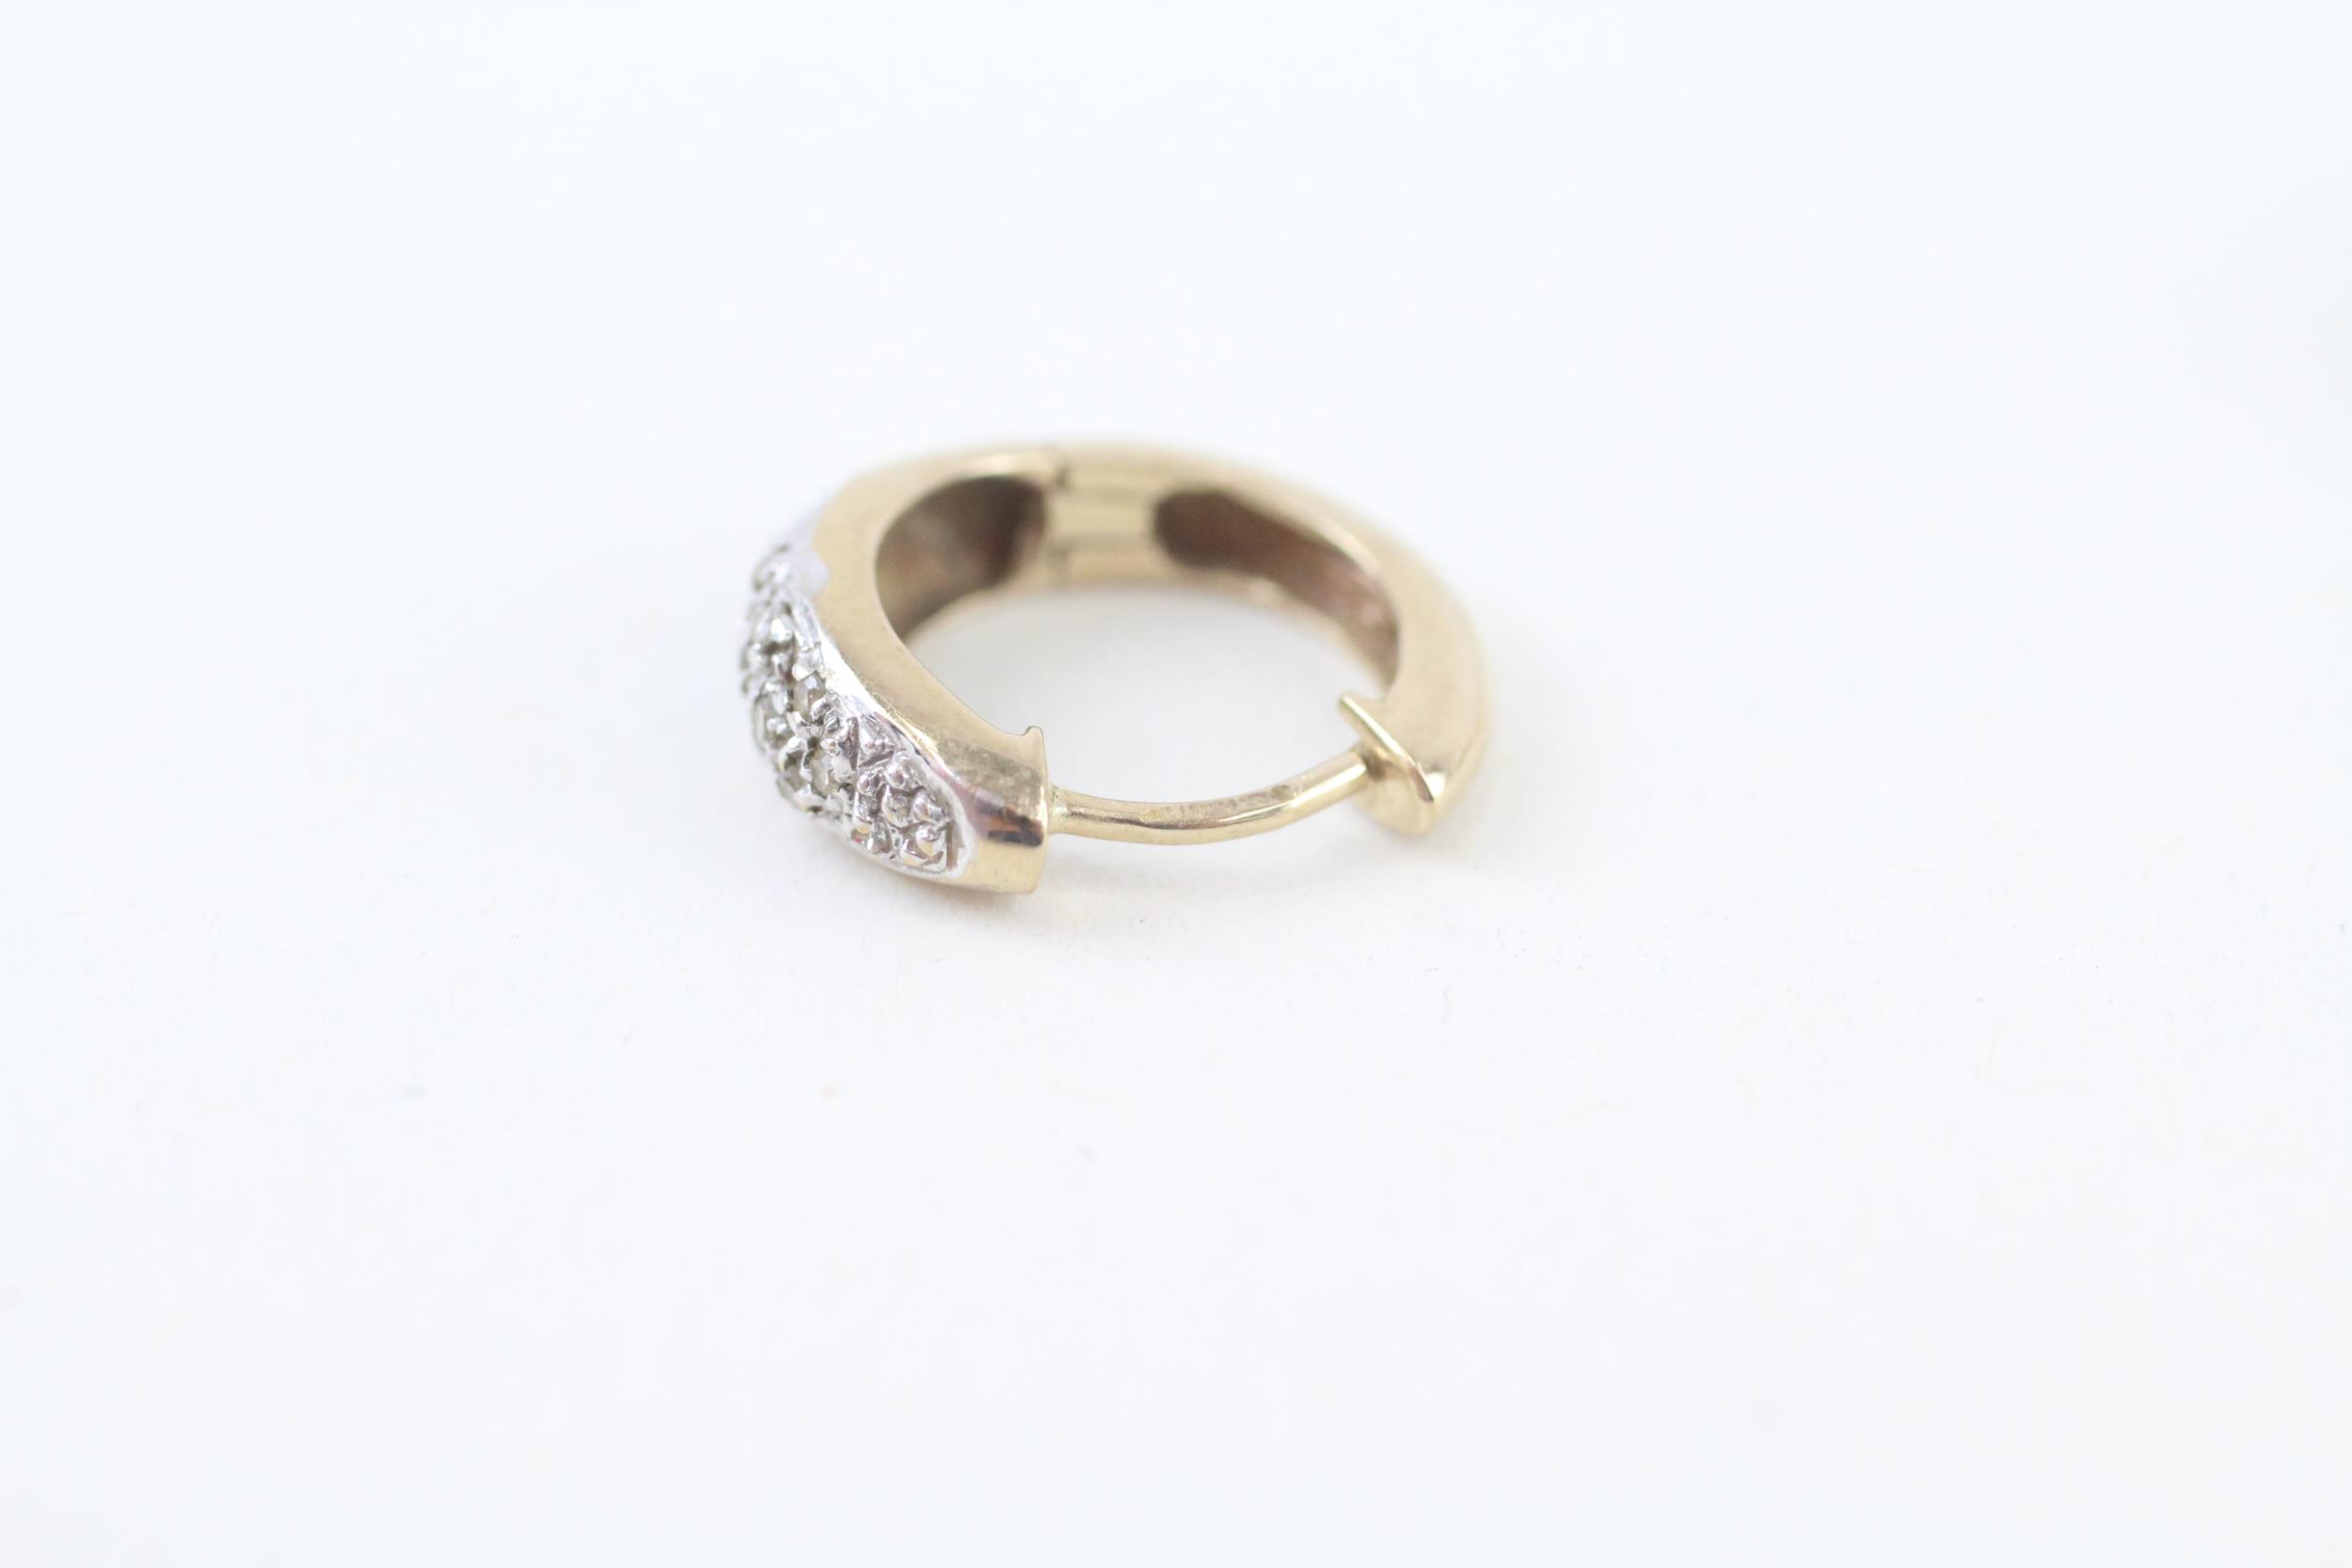 9ct gold pavé set diamond huggie hoop earrings (2.4g) - Image 4 of 4